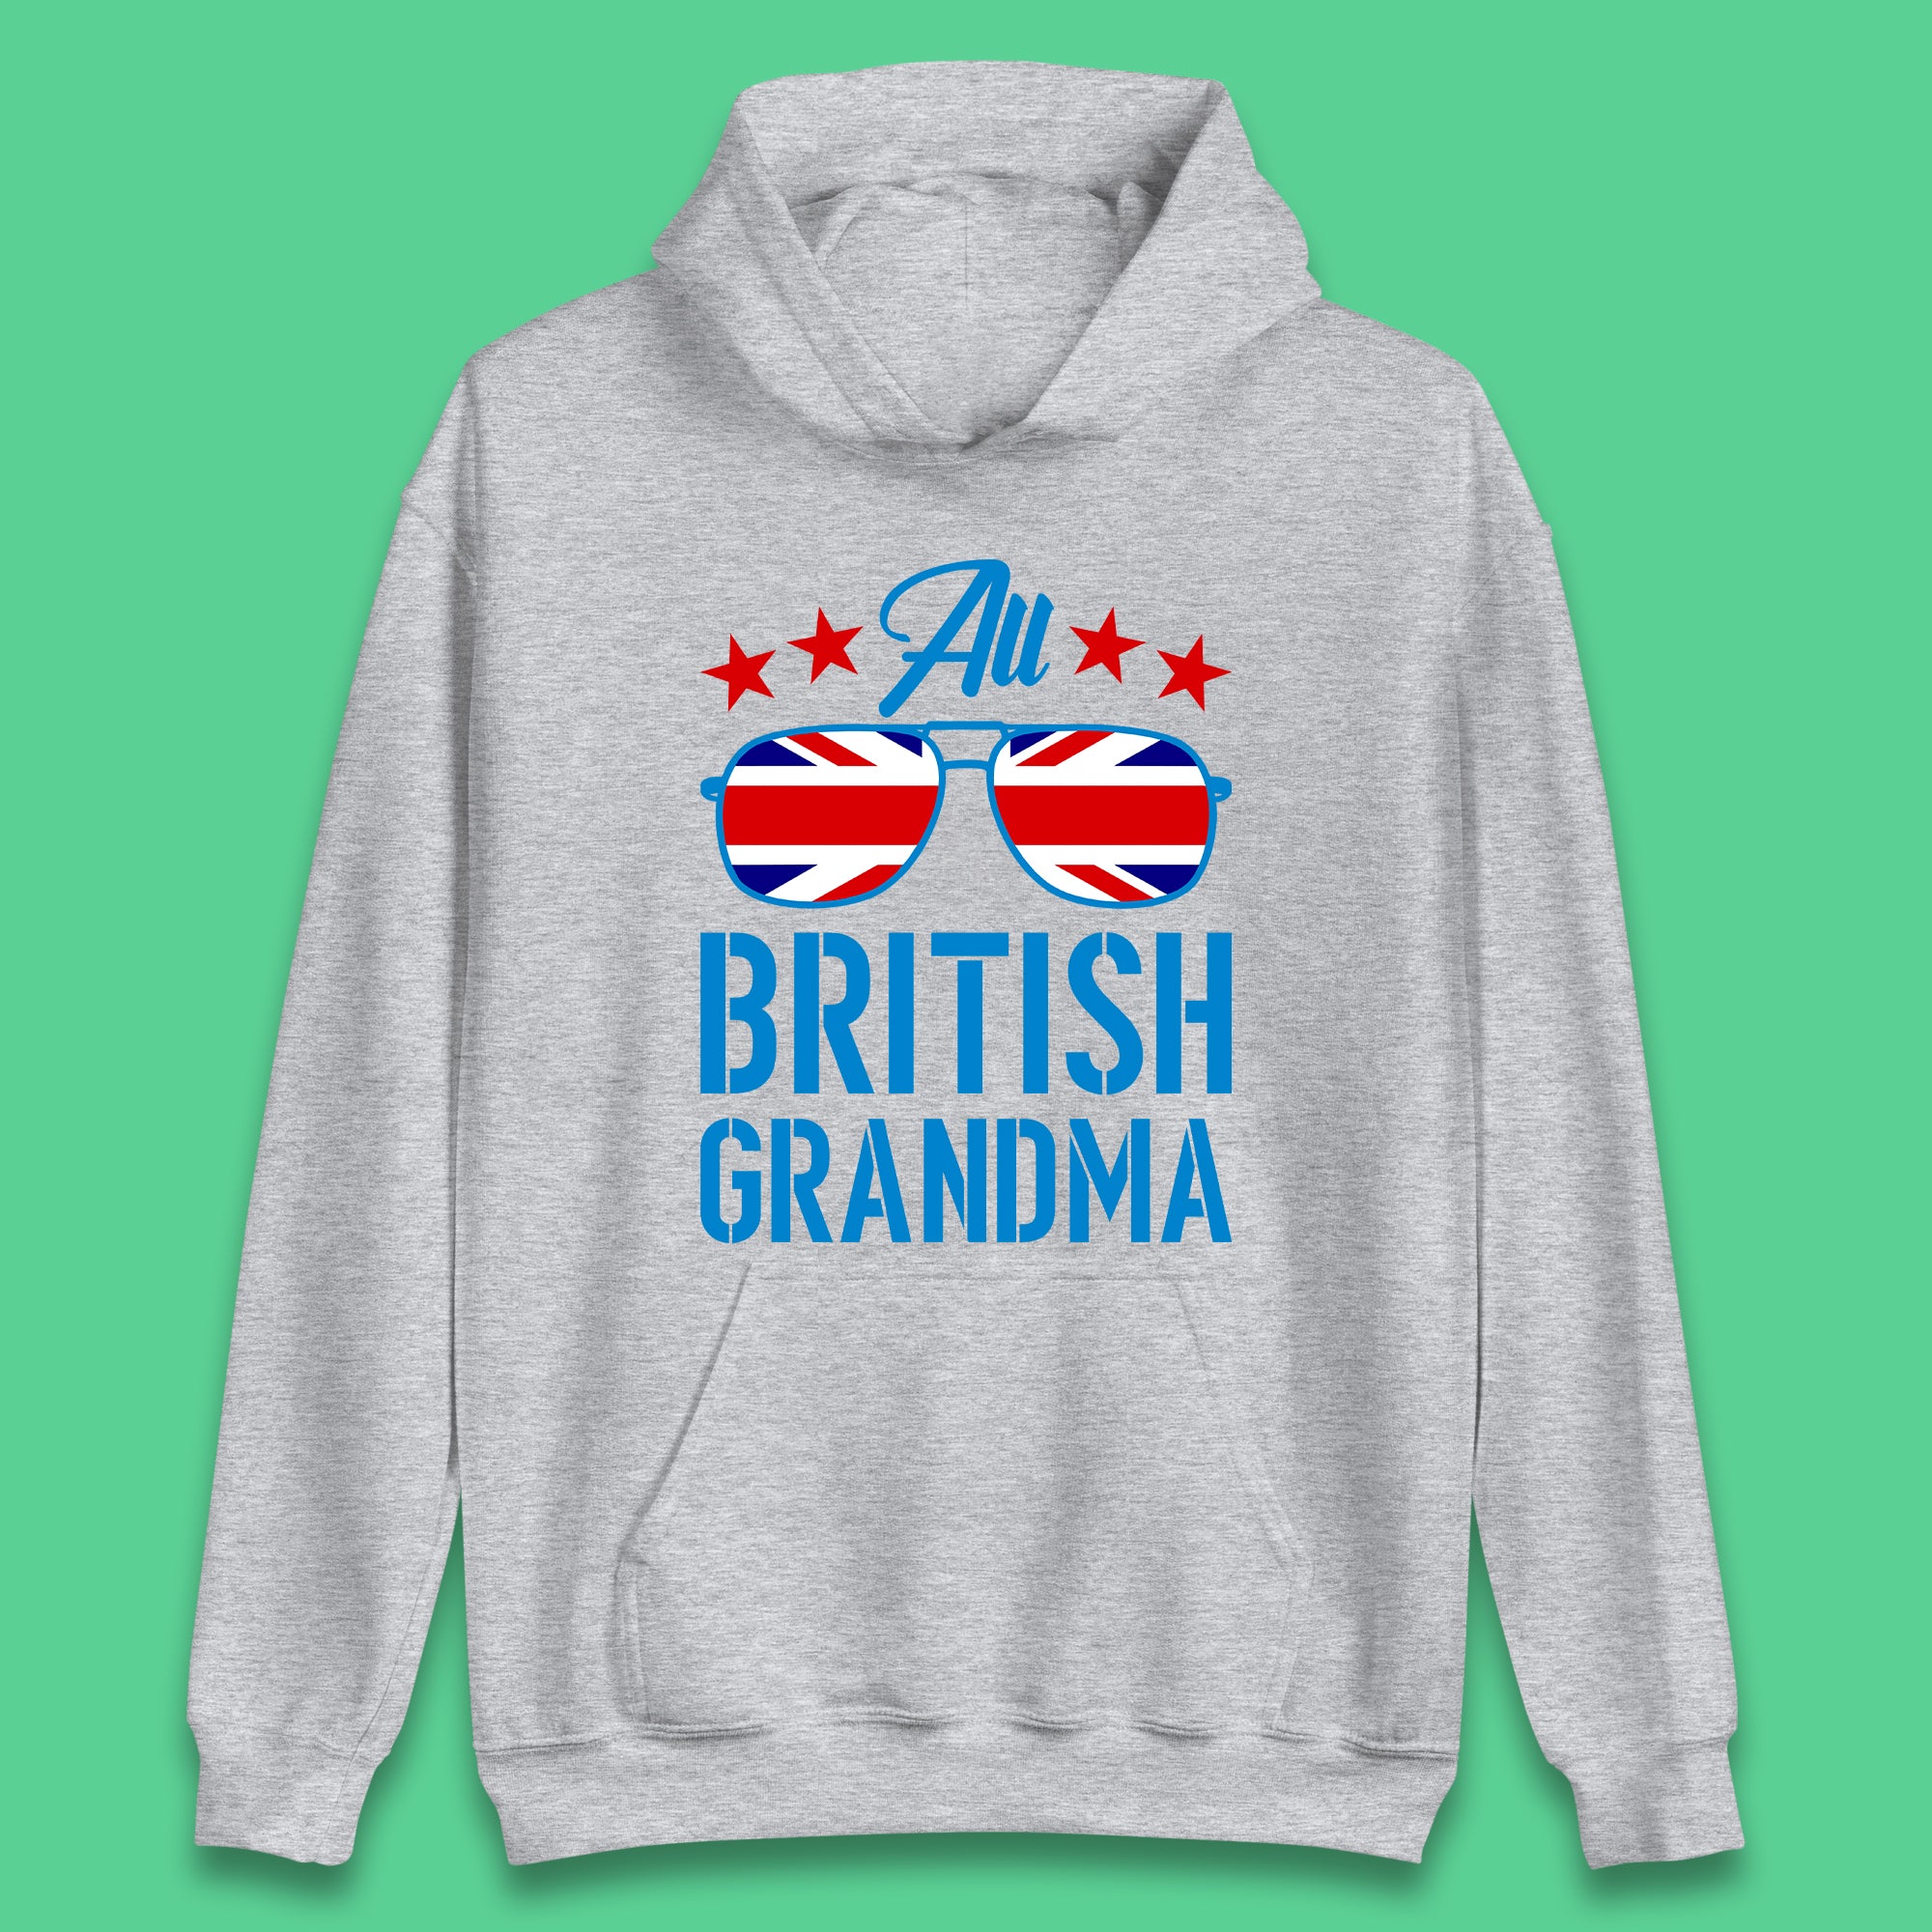 British Grandma Unisex Hoodie